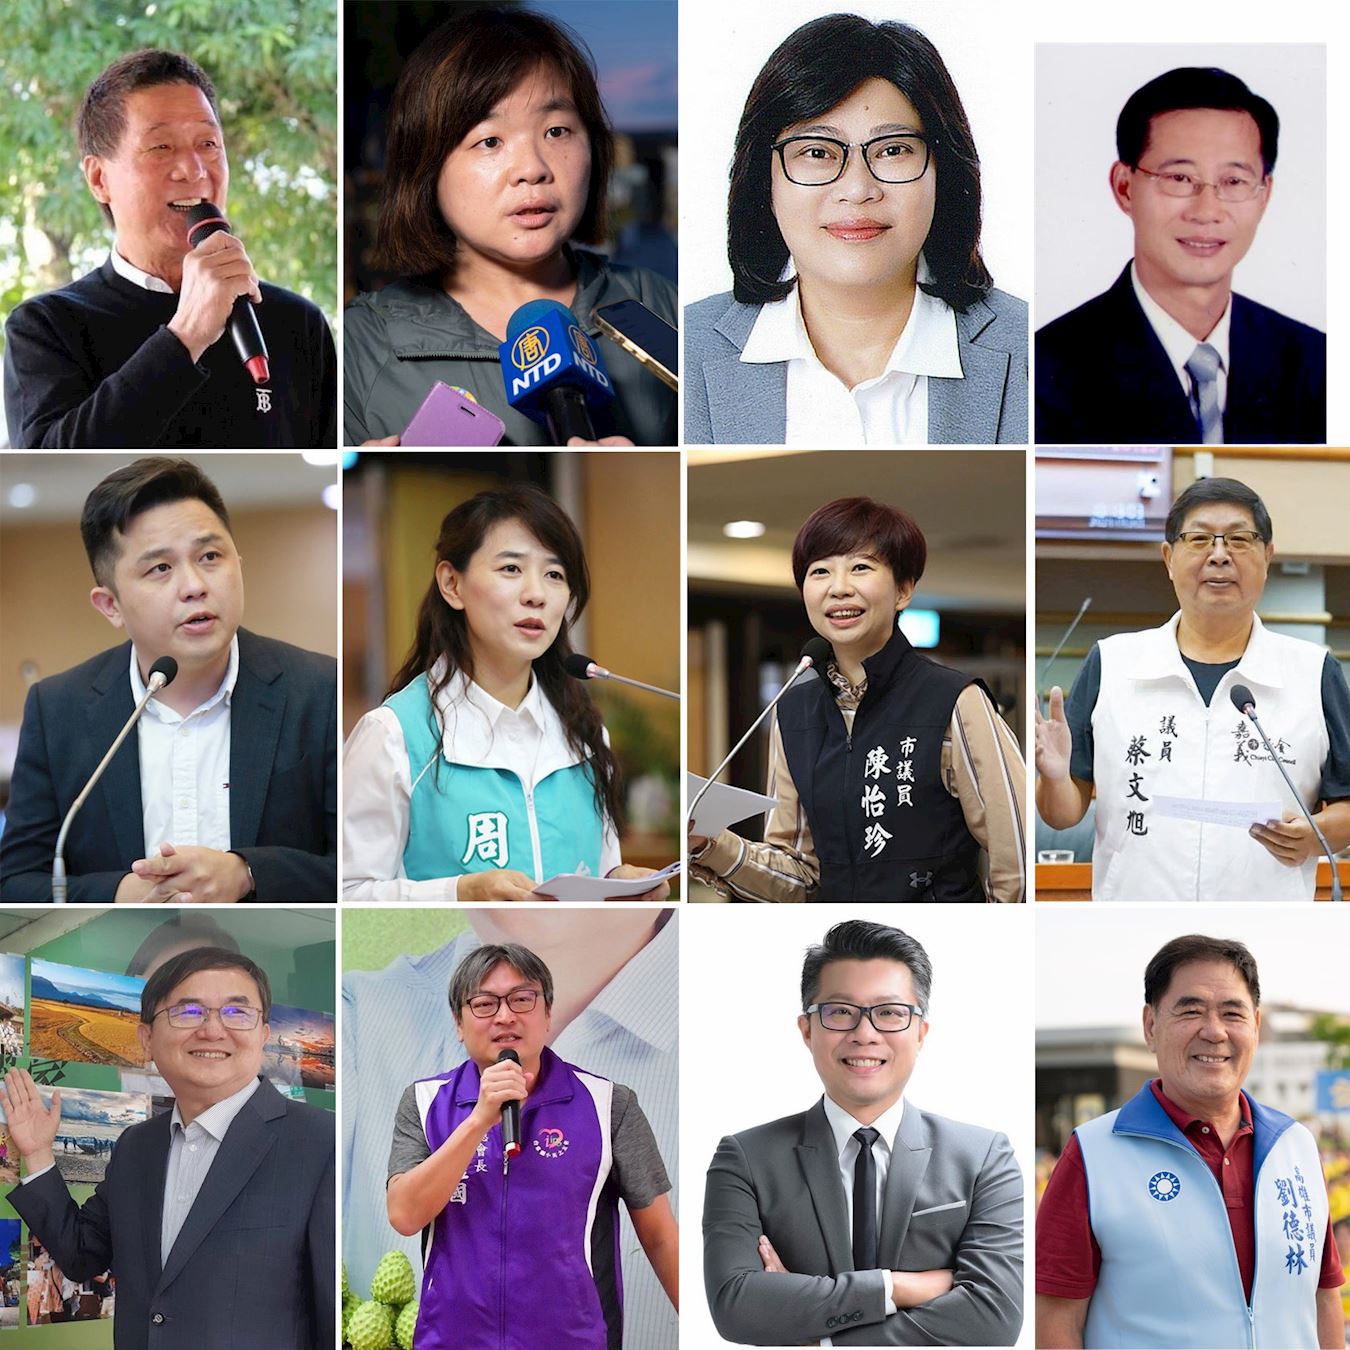 '图10：南台湾多位政要、专家学者、正义人士声援，齐声谴责中共暴行，呼吁共同制止这场迫害。'